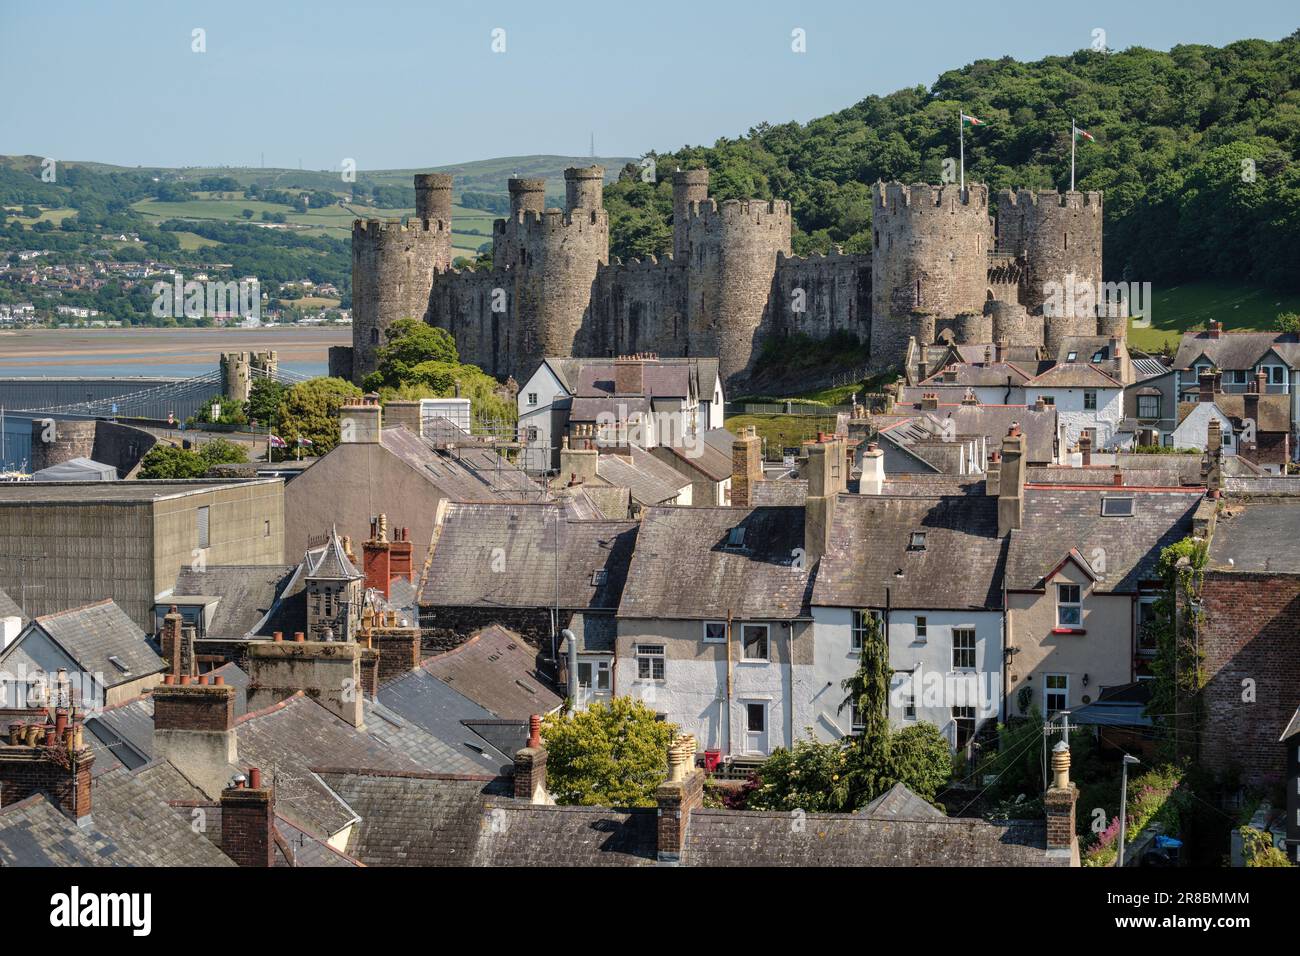 Vue depuis les murs de la ville de Conwy, de l'autre côté des toits, jusqu'au château de Conwy, au nord du pays de Galles Banque D'Images